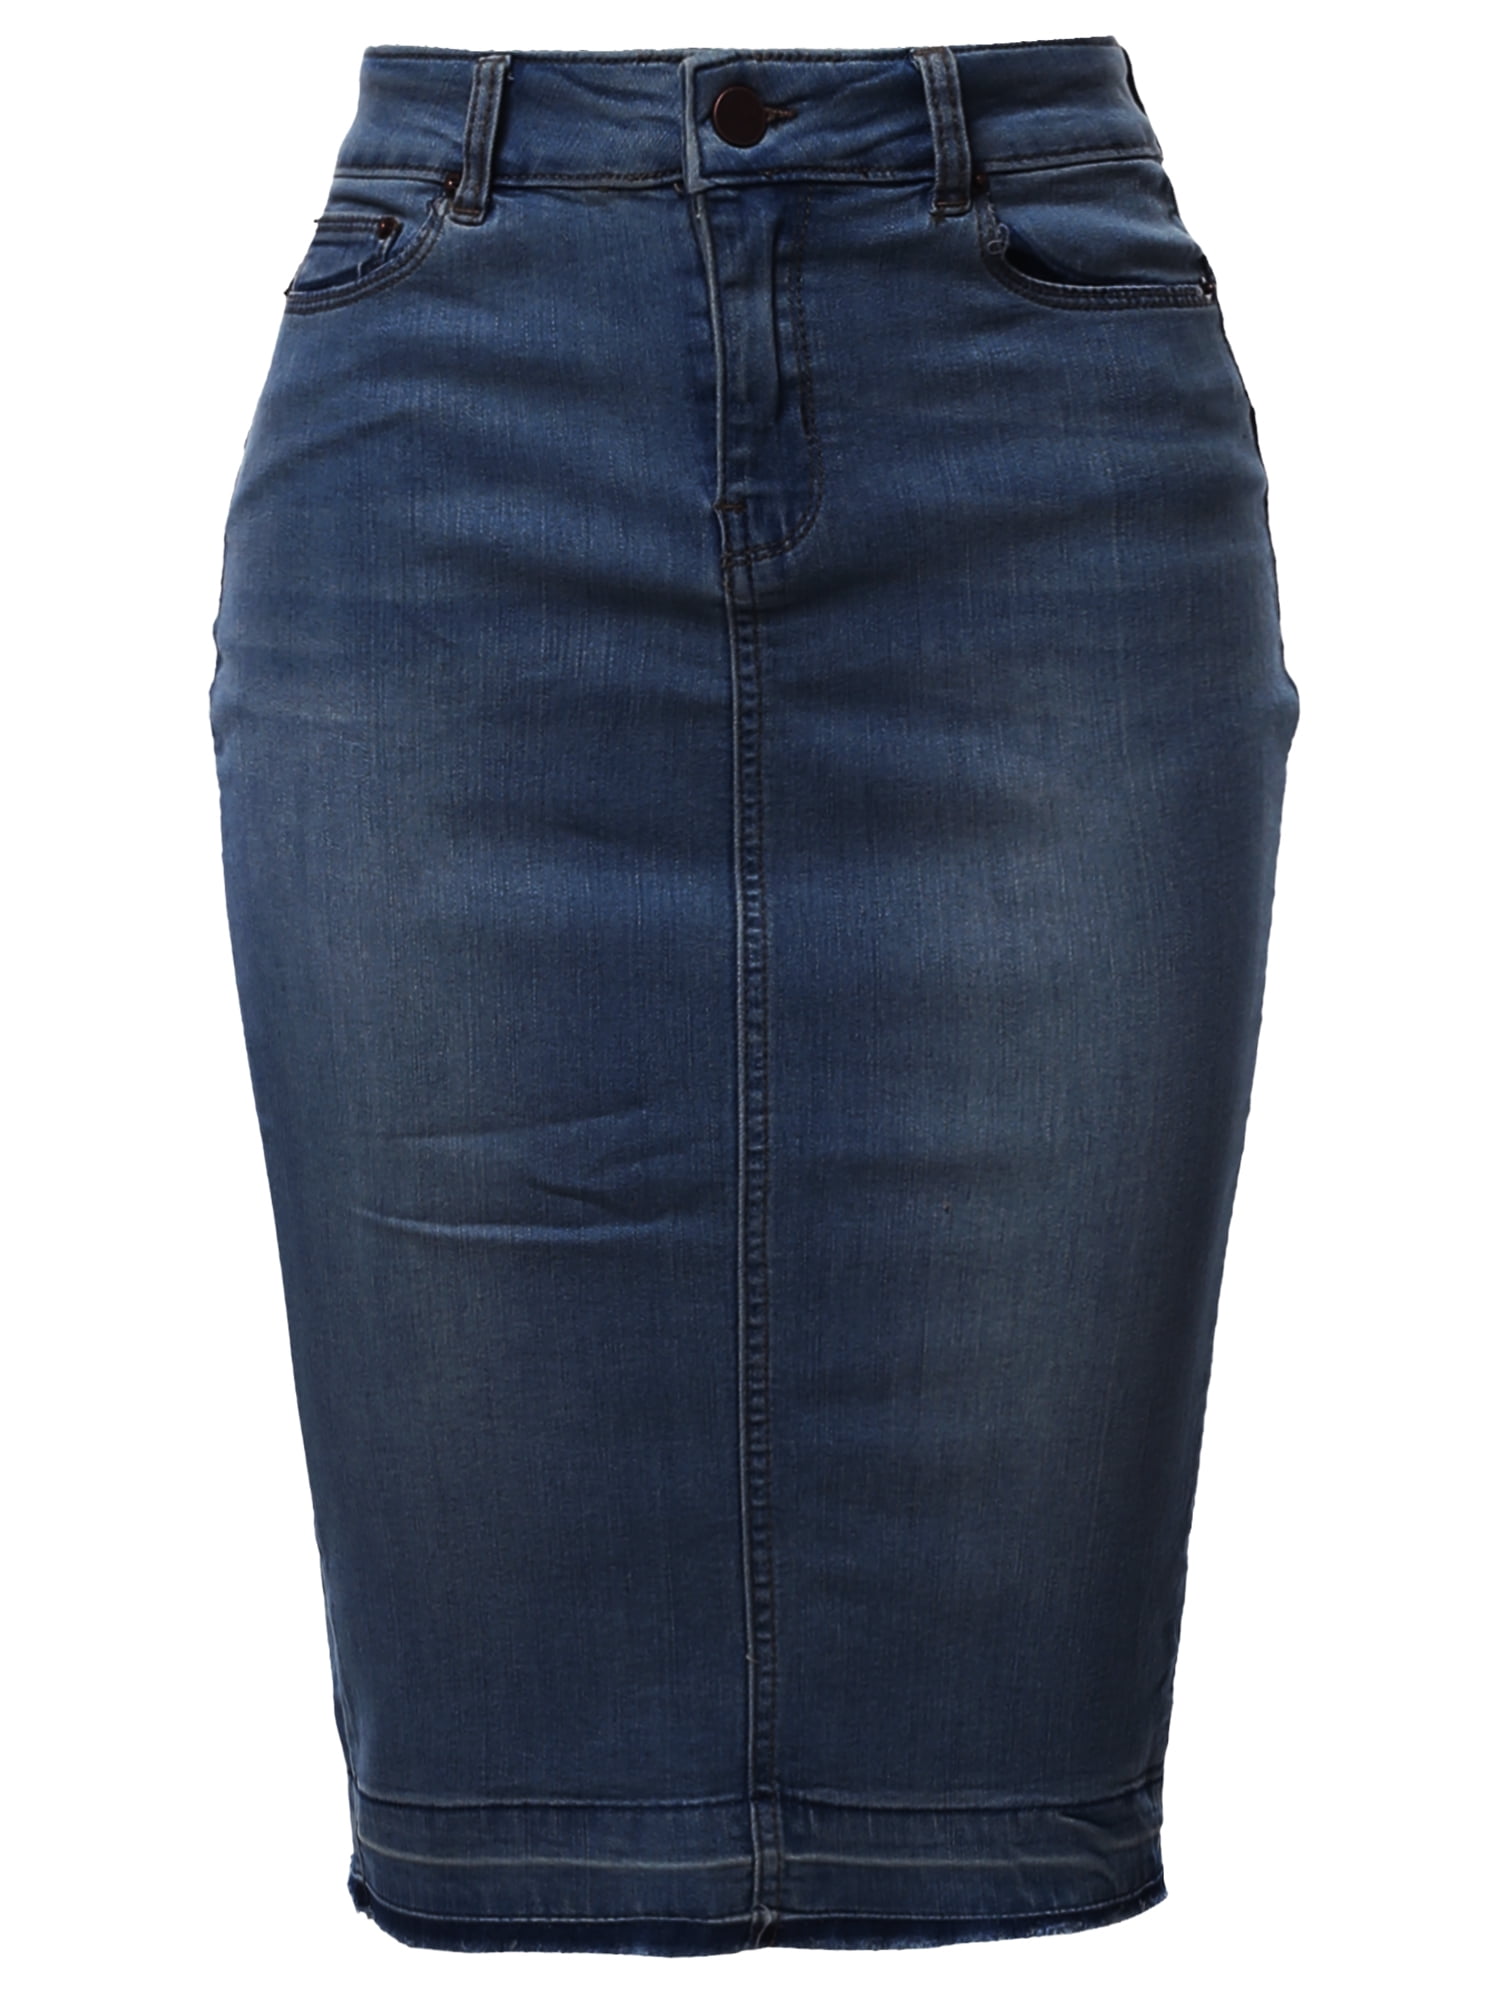 walmart blue jean skirts